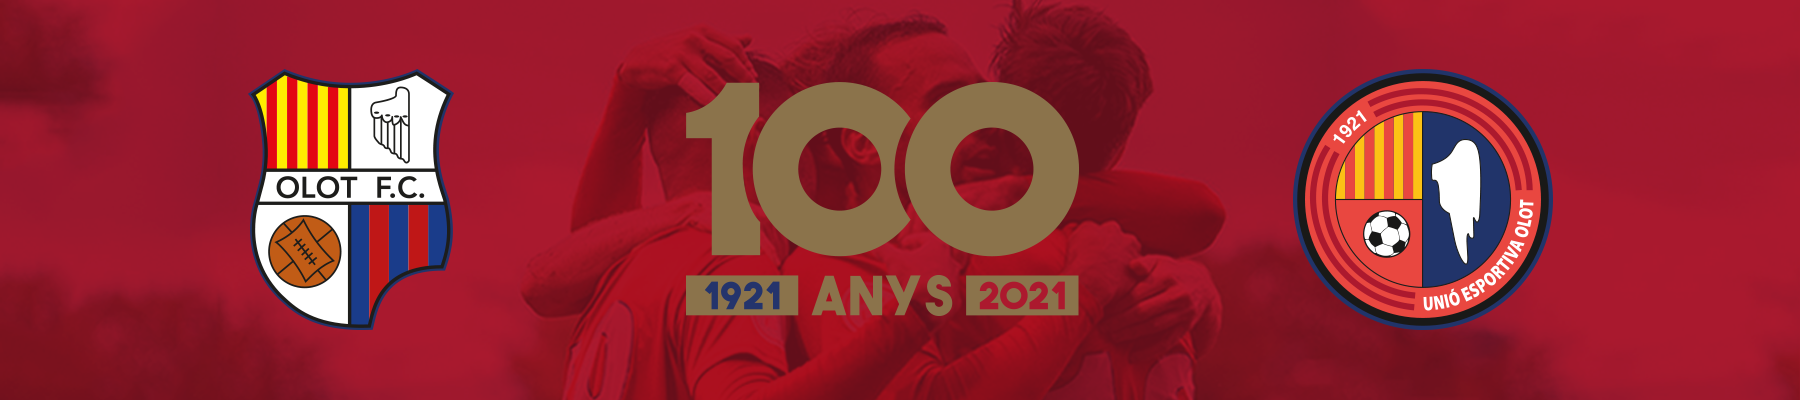 Cien años de la Unió Esportiva Olot (1922 - 2022)